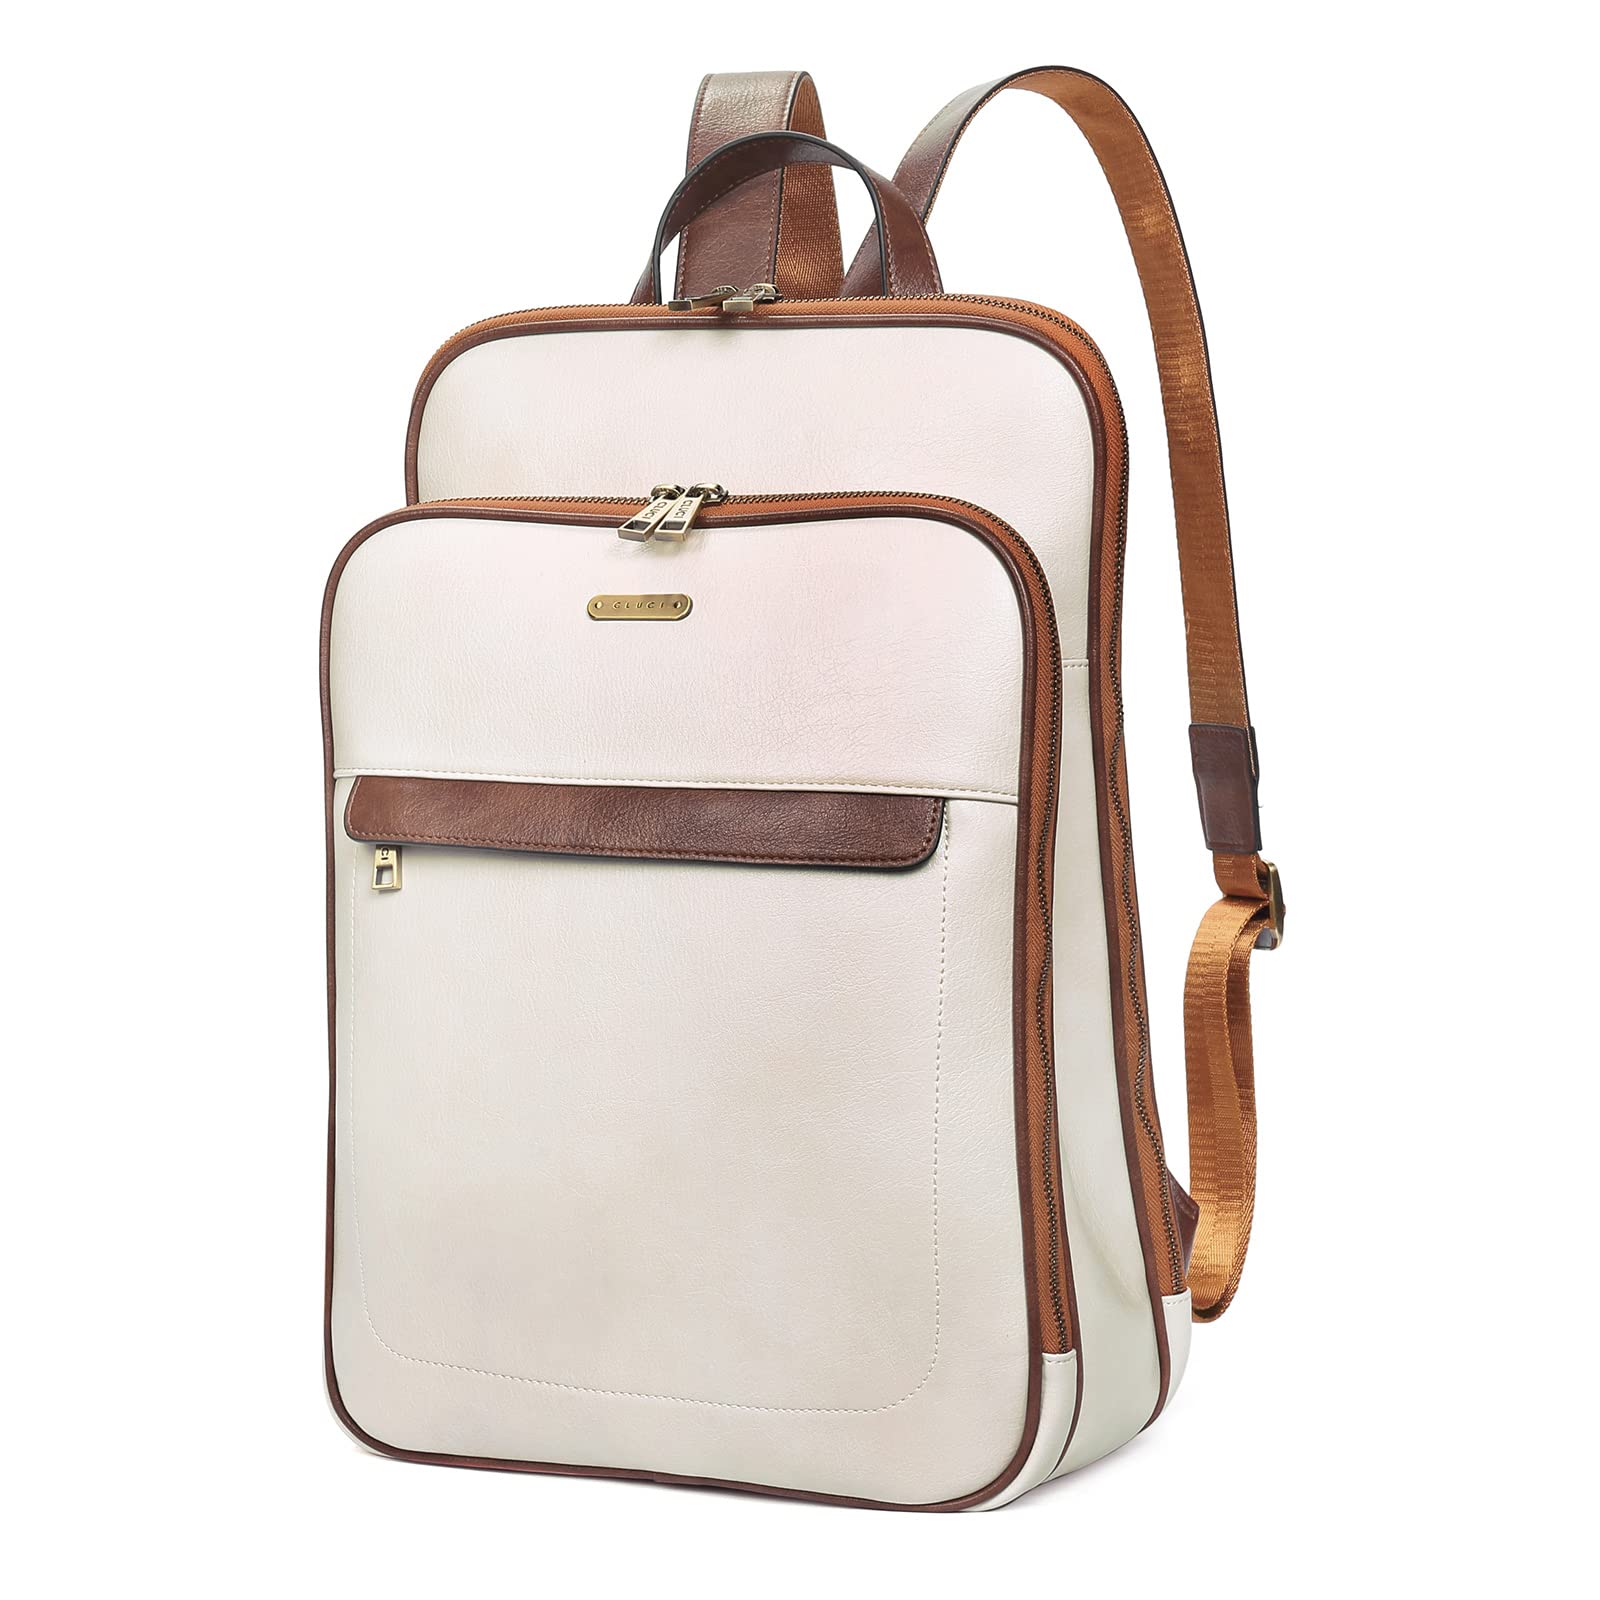 送料無料CLUCI Leather Laptop Backpack Purse for Women 15.6 inch Computer Backpack Stylish Travel Bag Daypack Beige with B